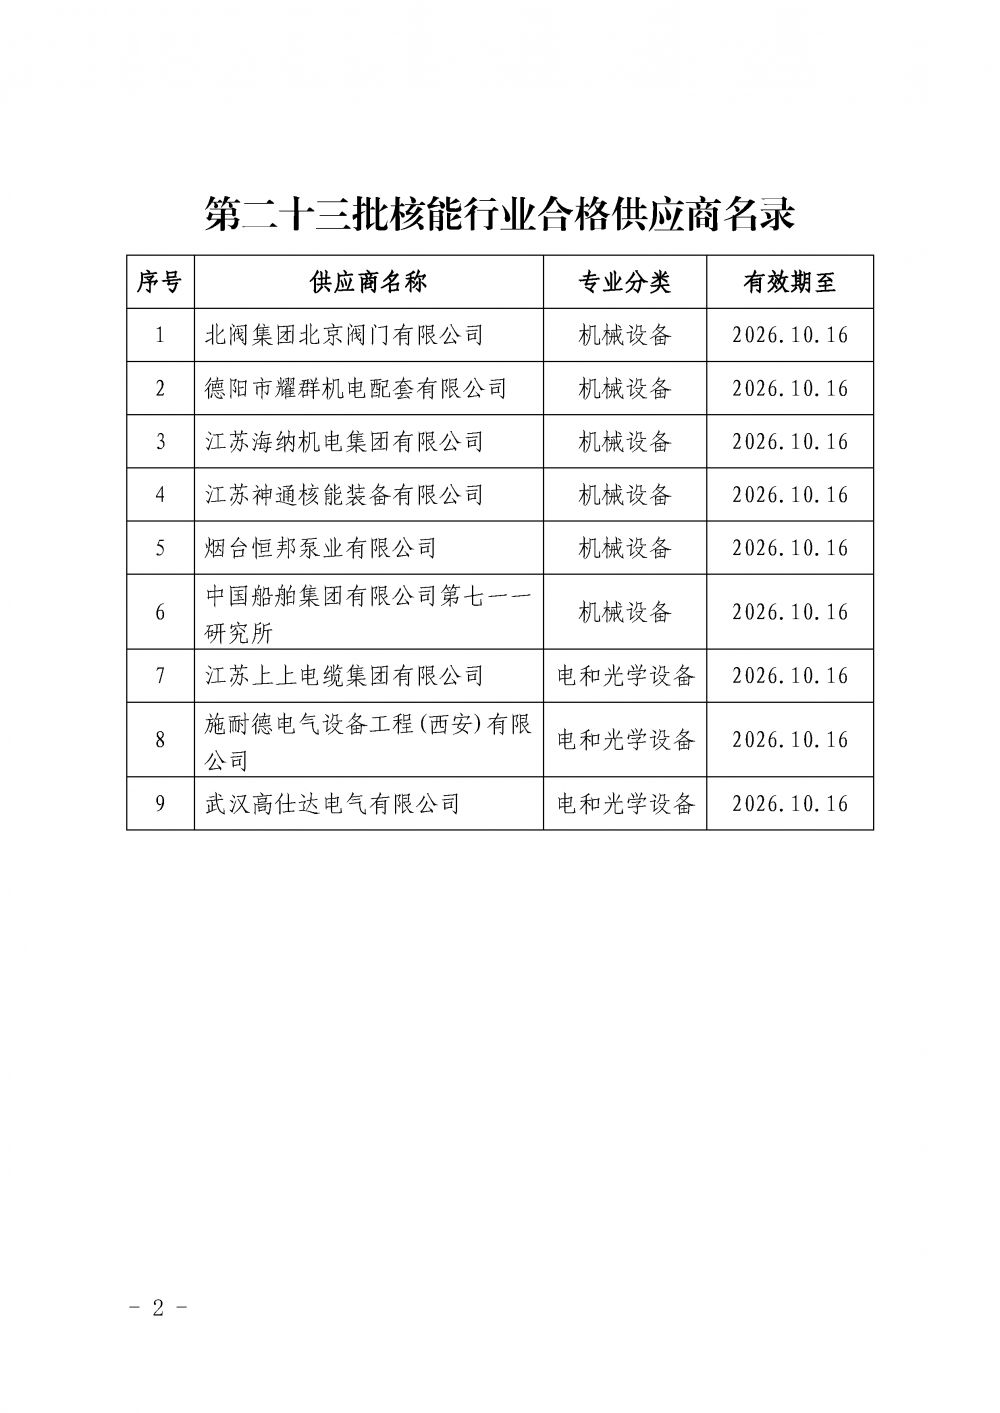 中国核能行业协会关于发布第二十三批核能行业合格供应商名录的公告_页面_2.png